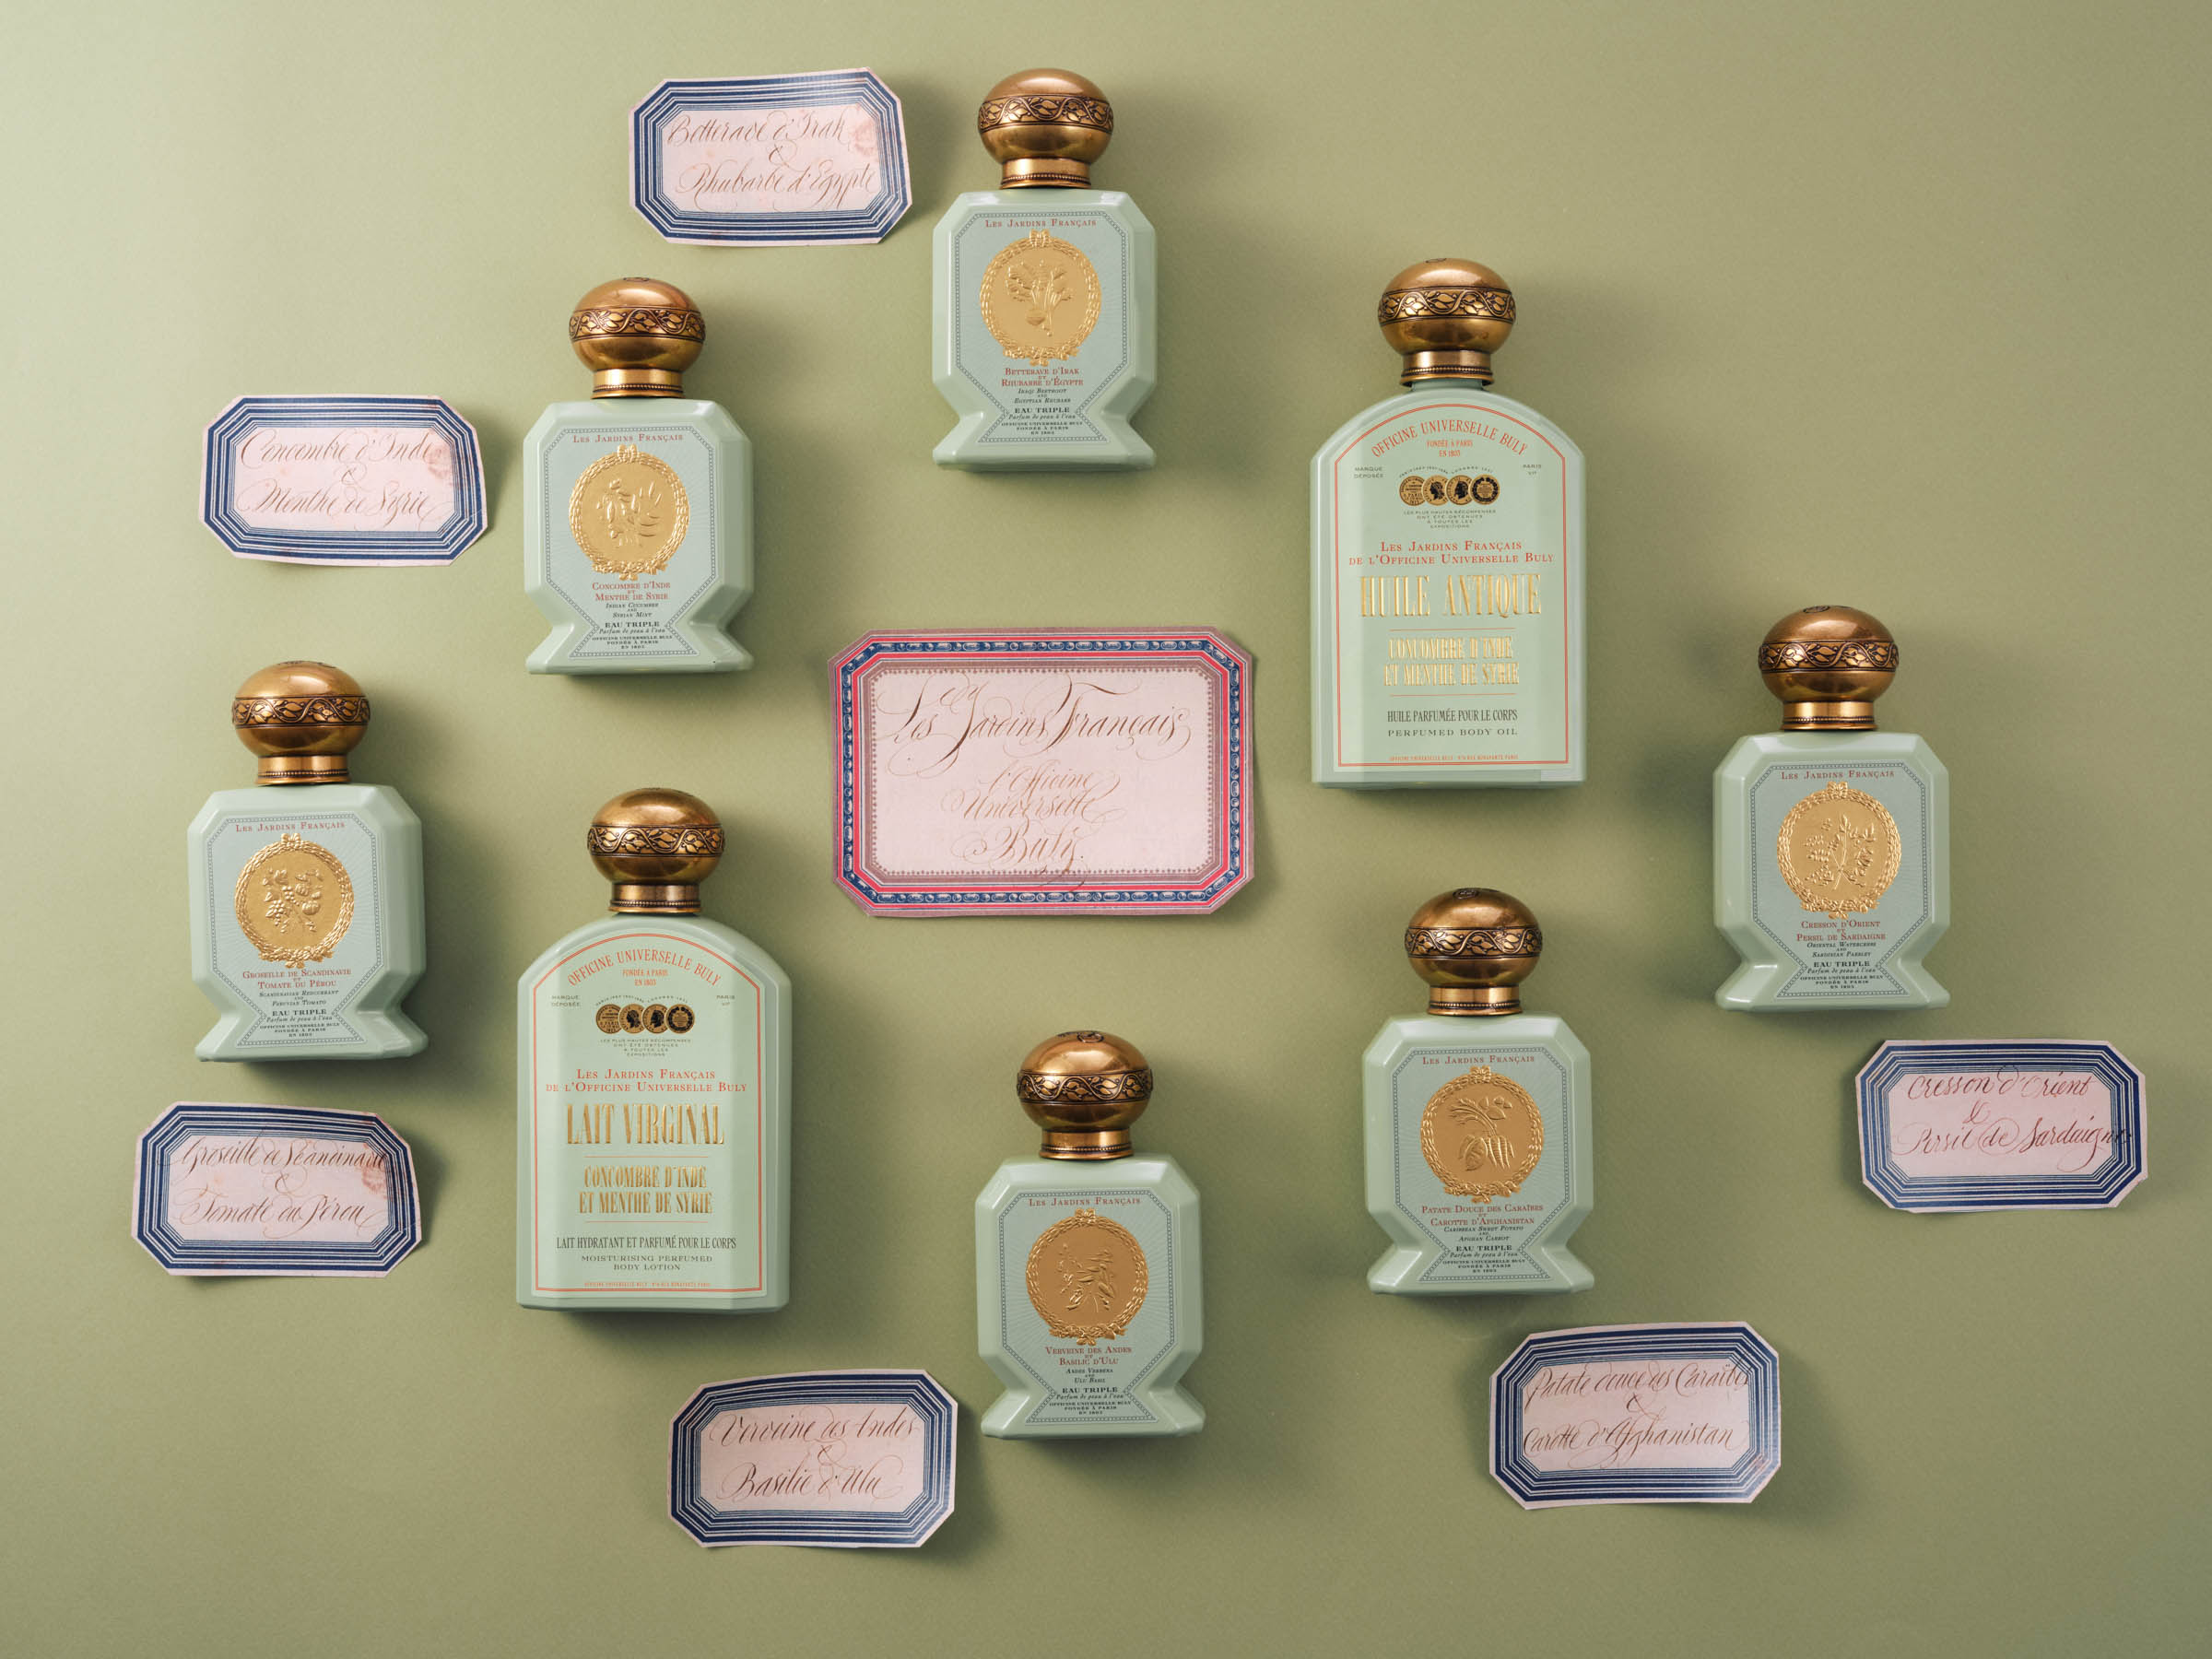 ビュリー」の“菜園の香り”を表現したコレクションからボディケア製品が登場